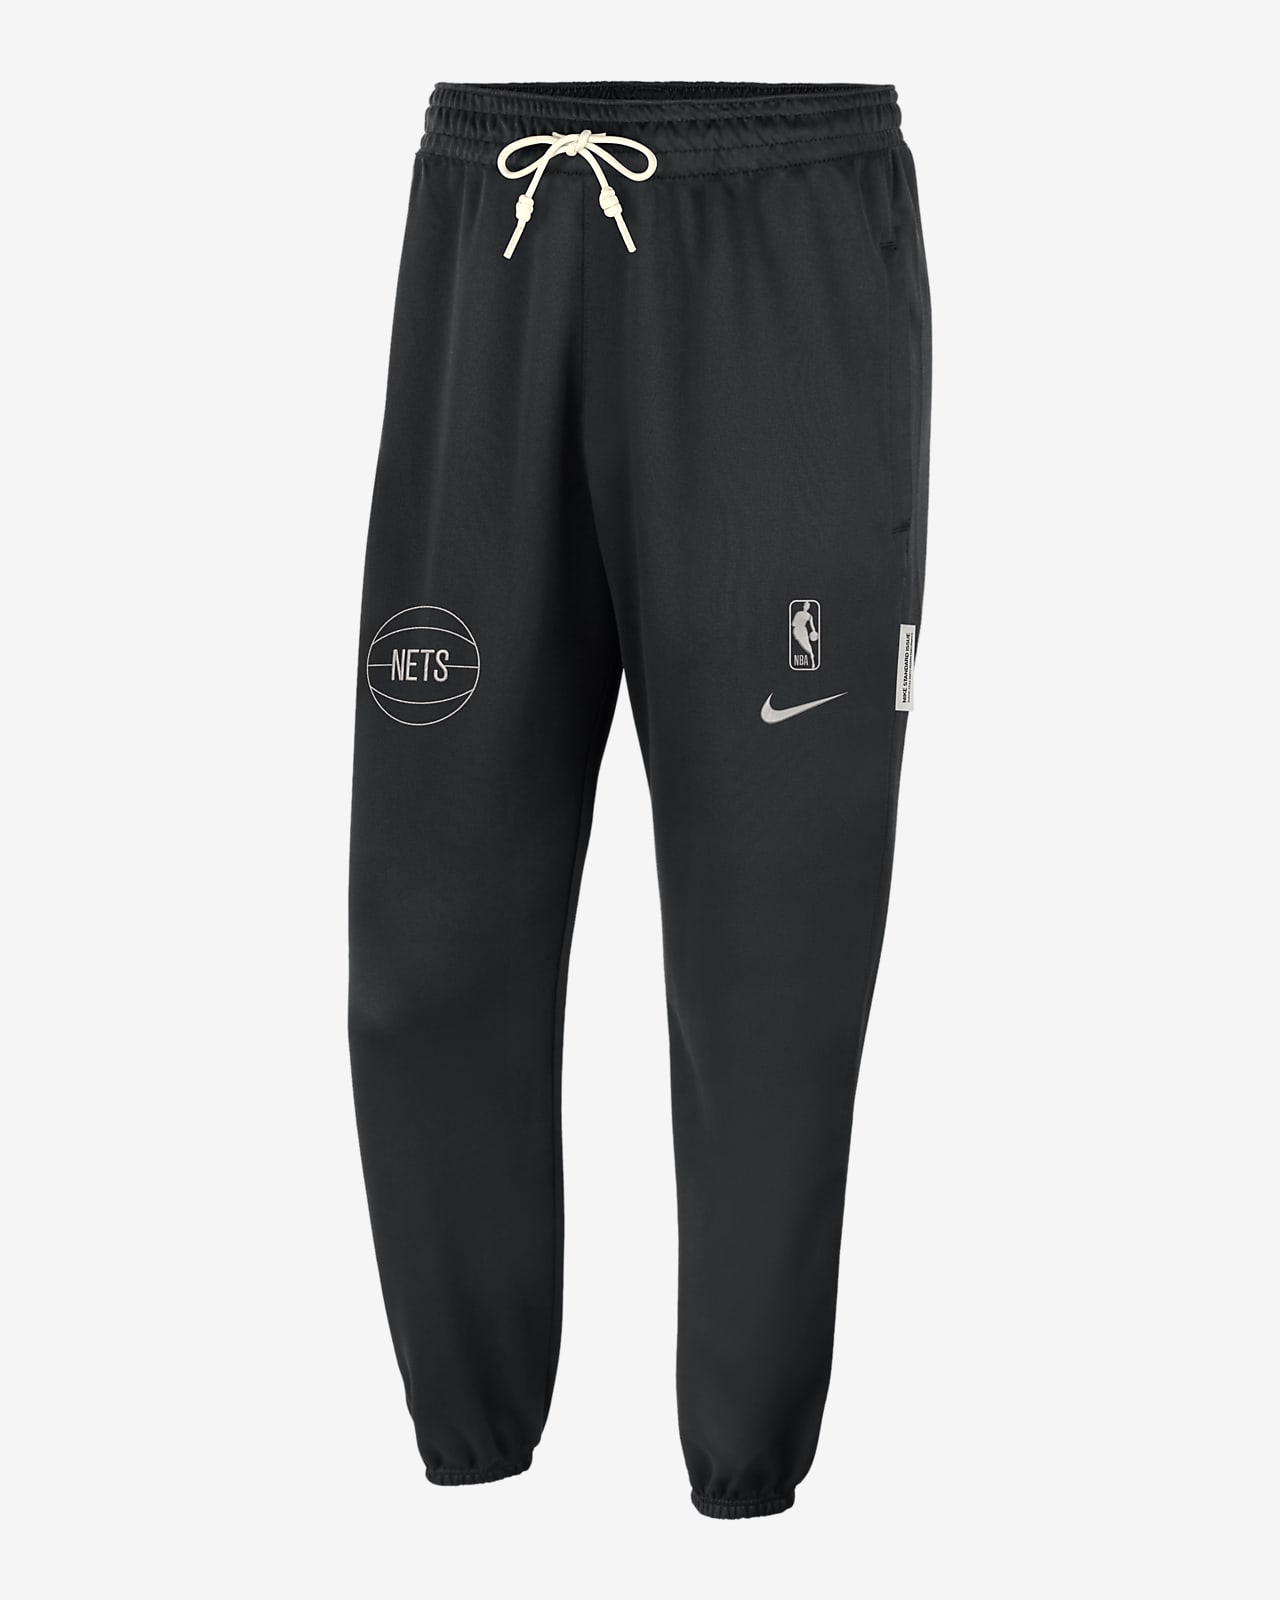 Brooklyn Nets Standard Issue Pantalons Nike Dri-FIT NBA - Home